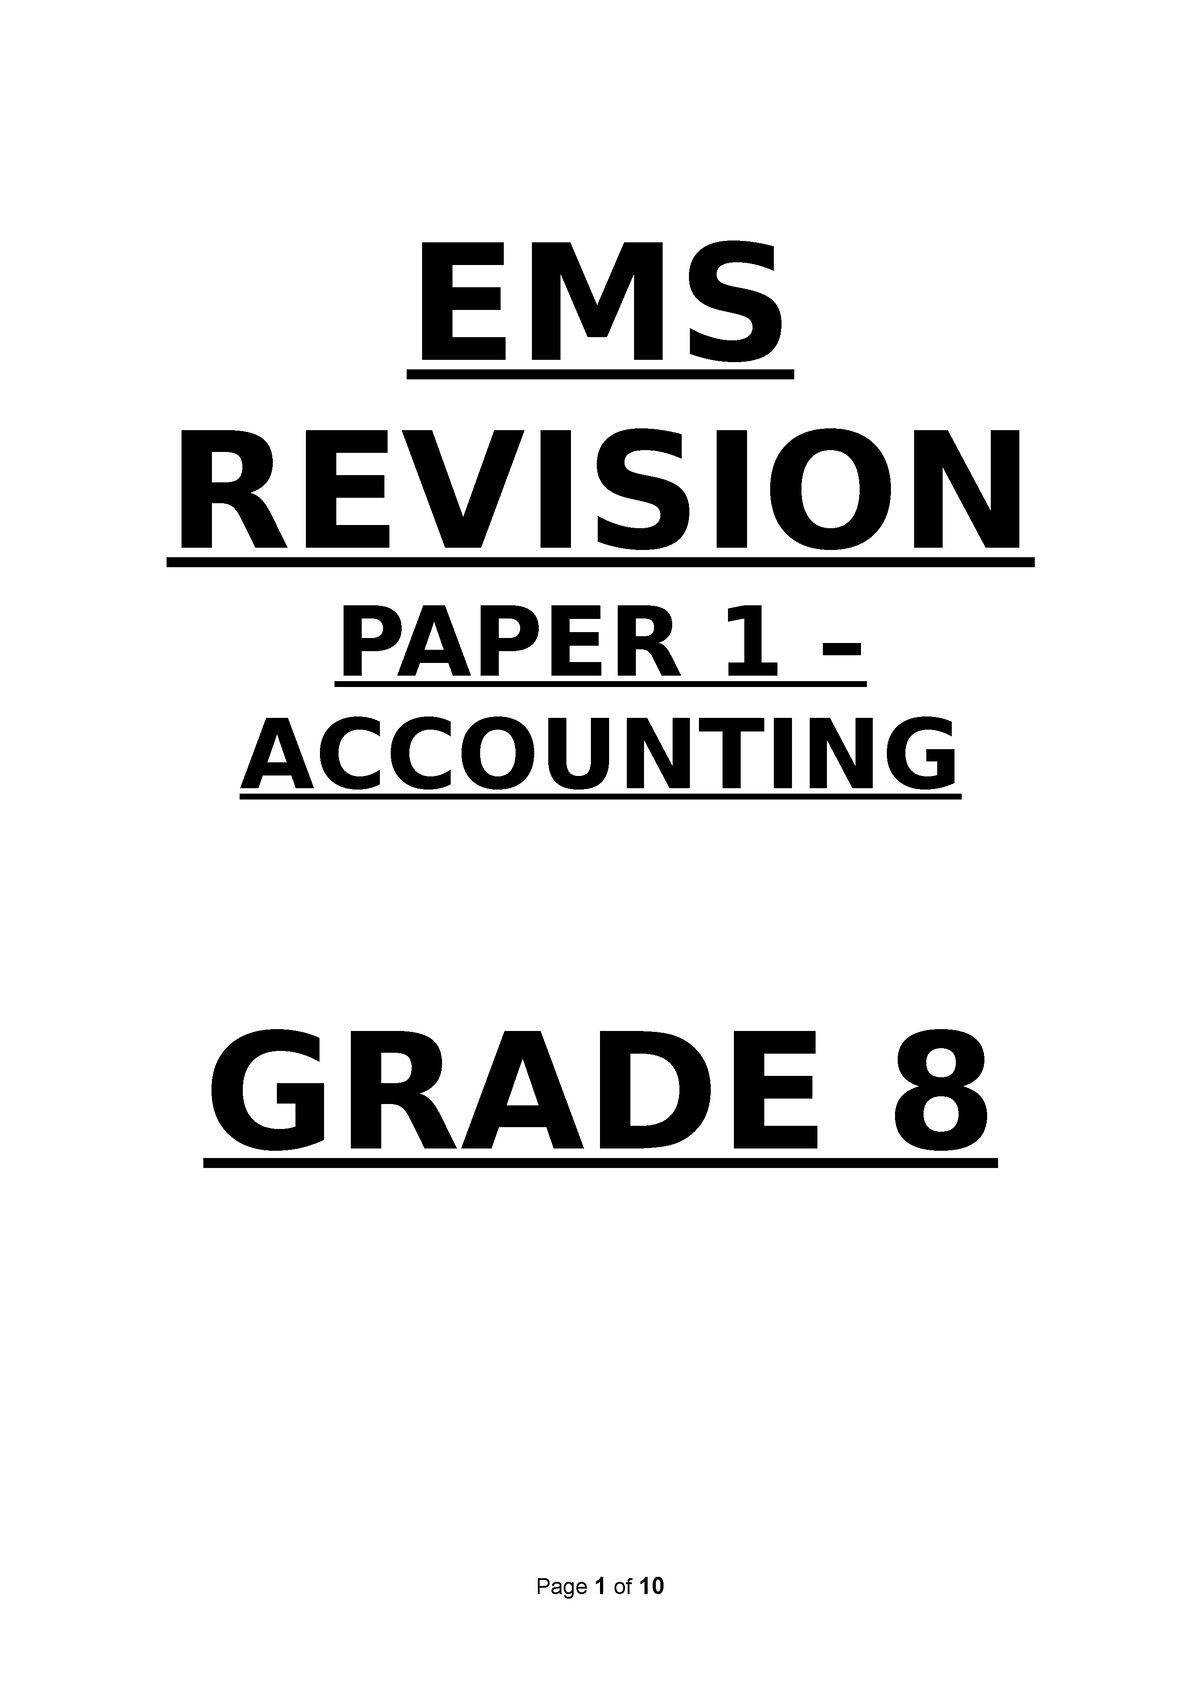 ems grade 8 term 3 assignment